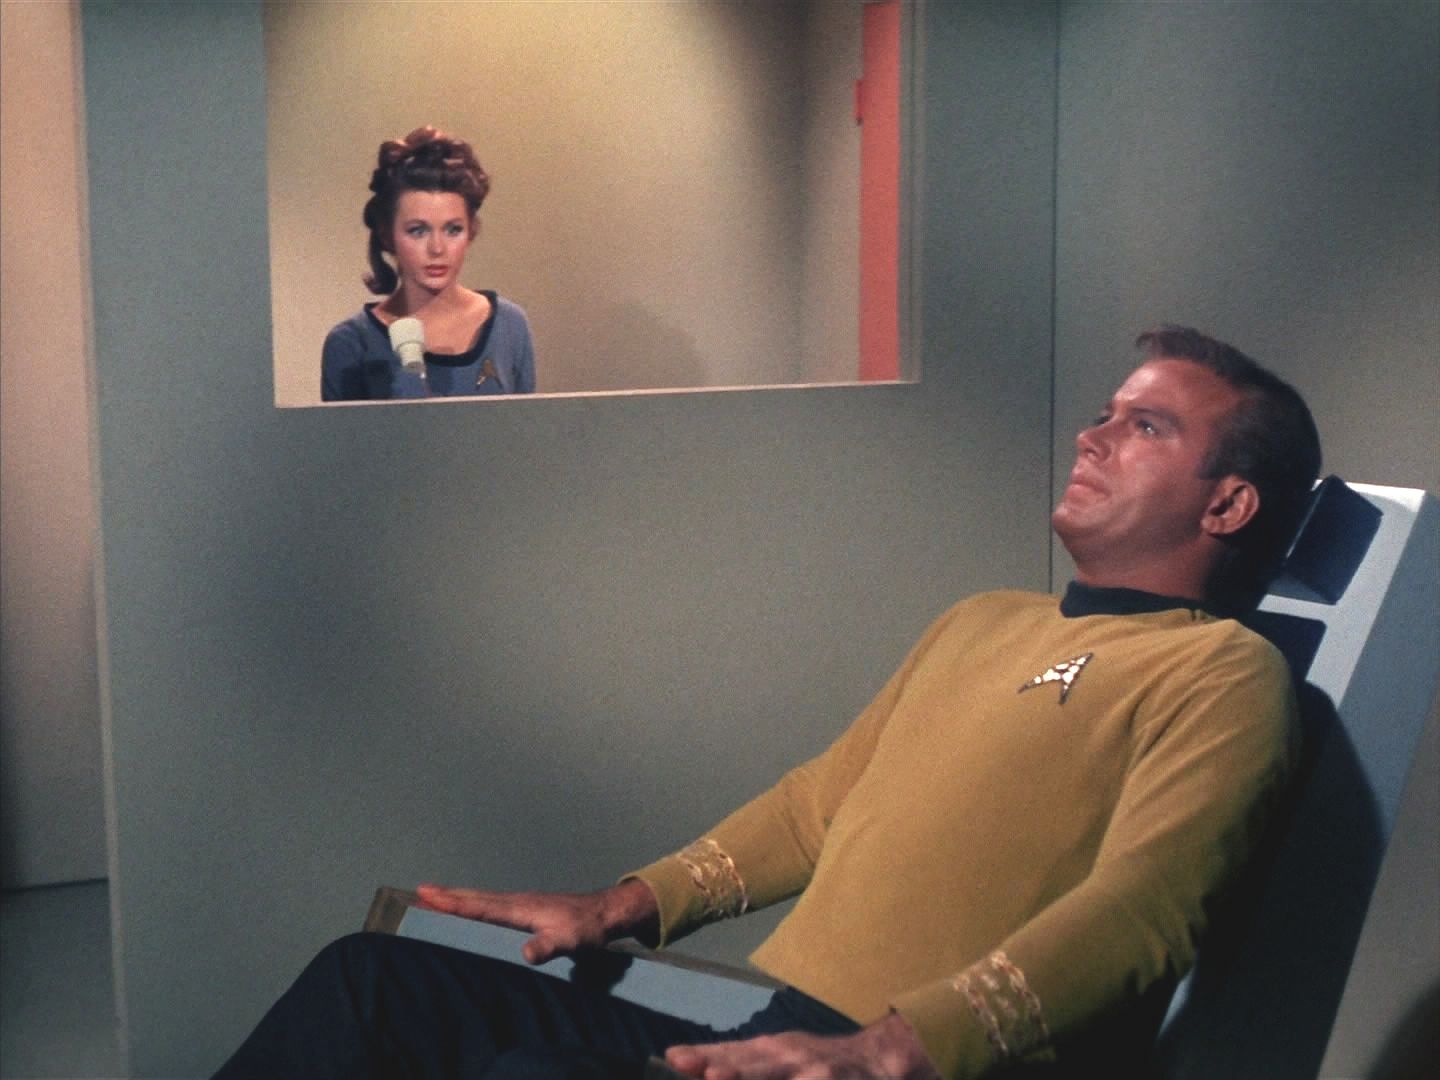 Kirk to musí vyzkoušet sám na sobě. Krátce na něj působí paprsek slabé intenzity, ale i tak mu Helen dokáže vymazat myšlenky a vsugerovat, cokoliv ji právě napadne.